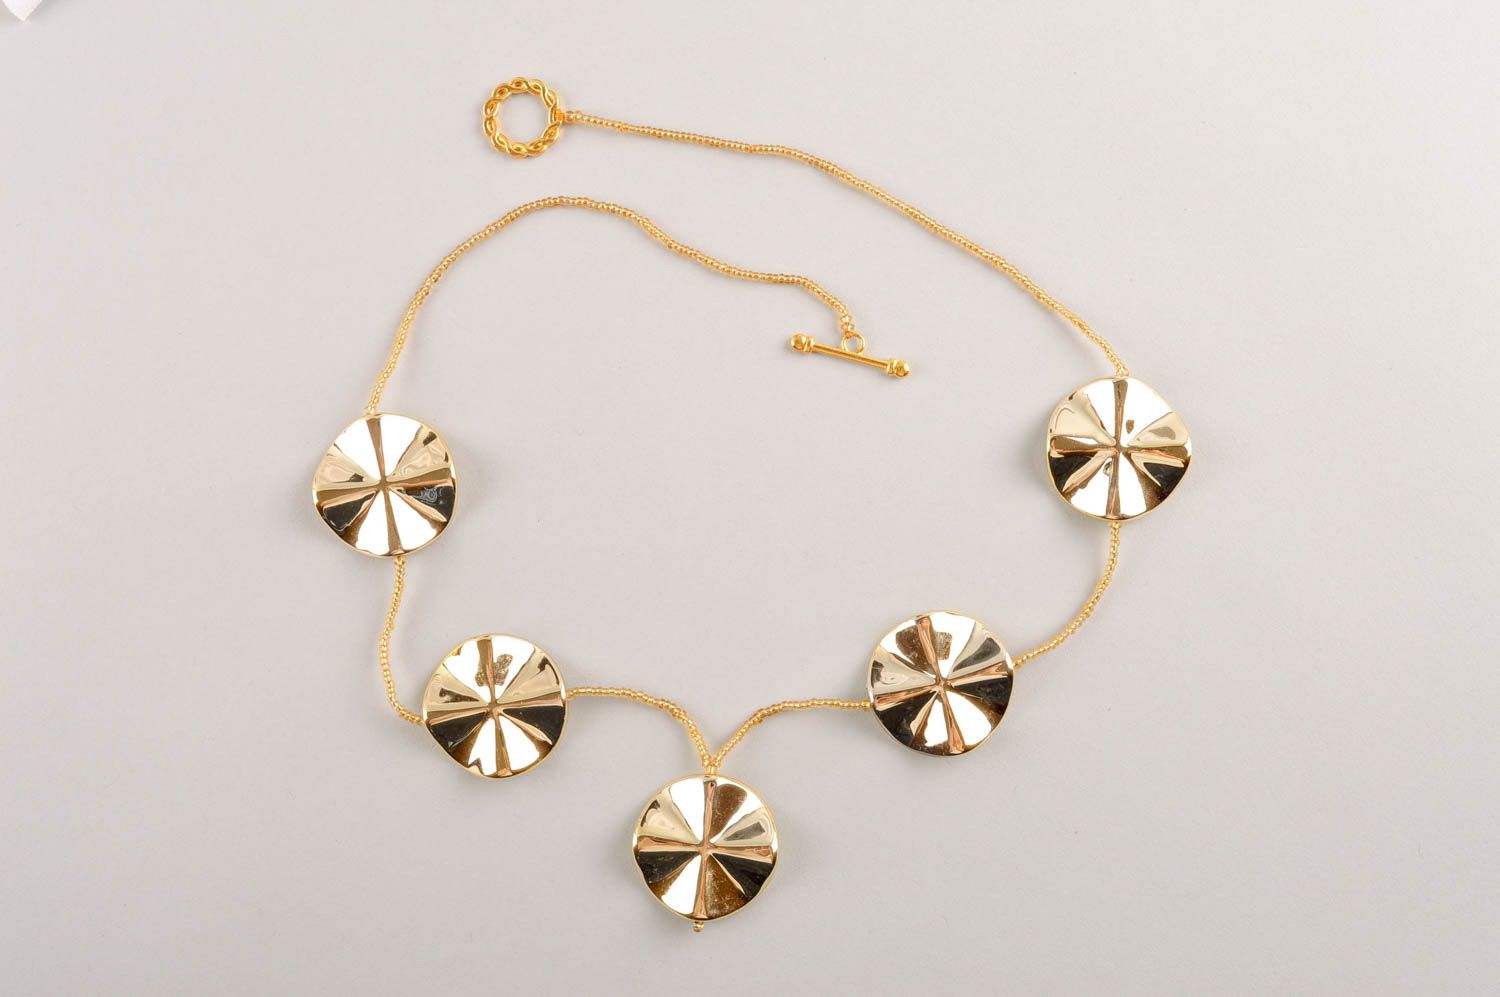 Handmade stylish accessory beautiful beaded necklace elegant necklace gift photo 5